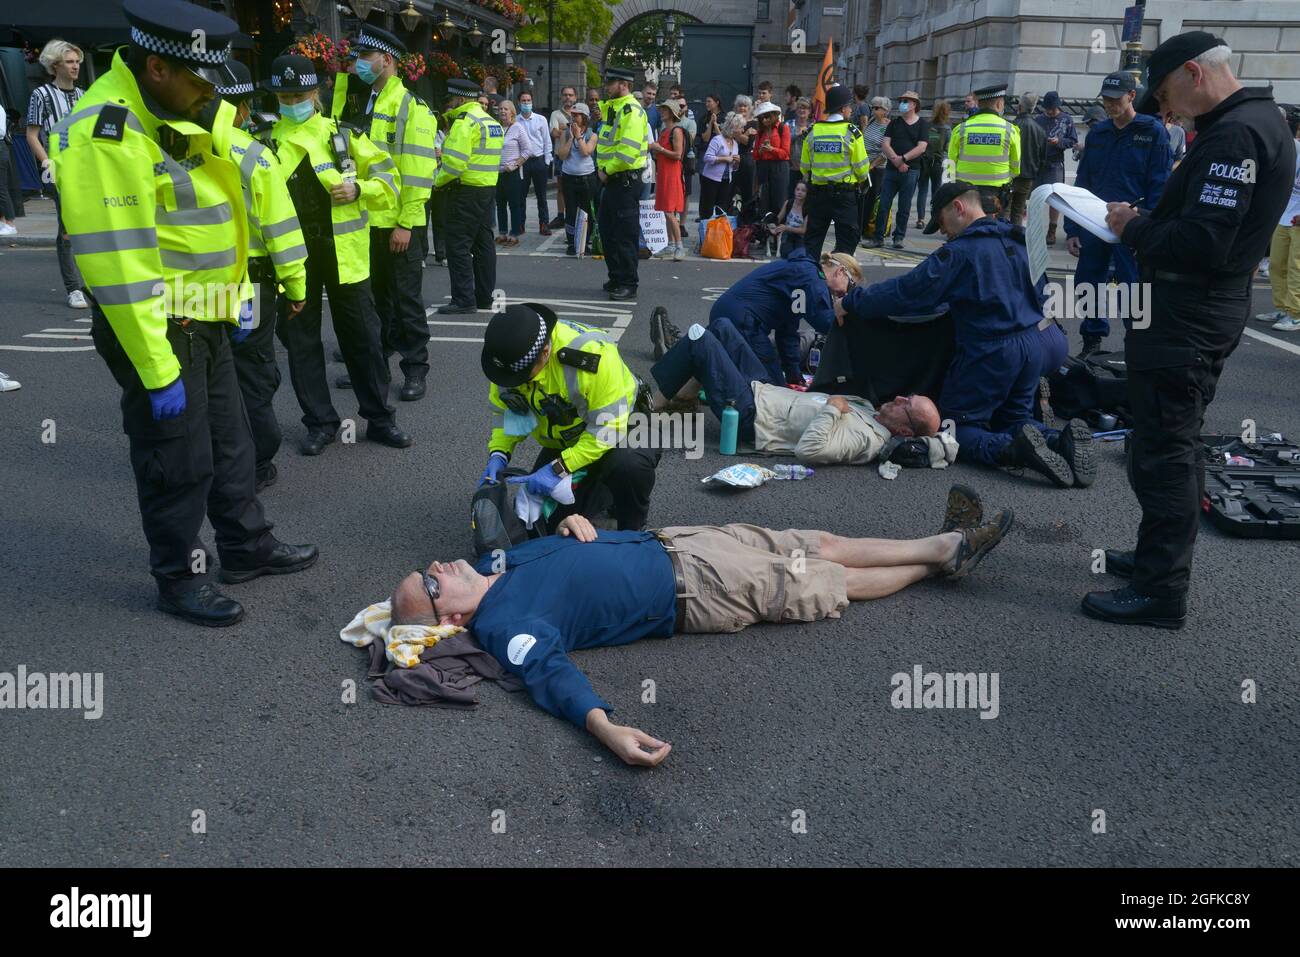 La police arrête un manifestant pendant la manifestation. Les activistes de la rébellion des extinction sur le changement climatique manifestent à Parliament Street, Westminster Banque D'Images